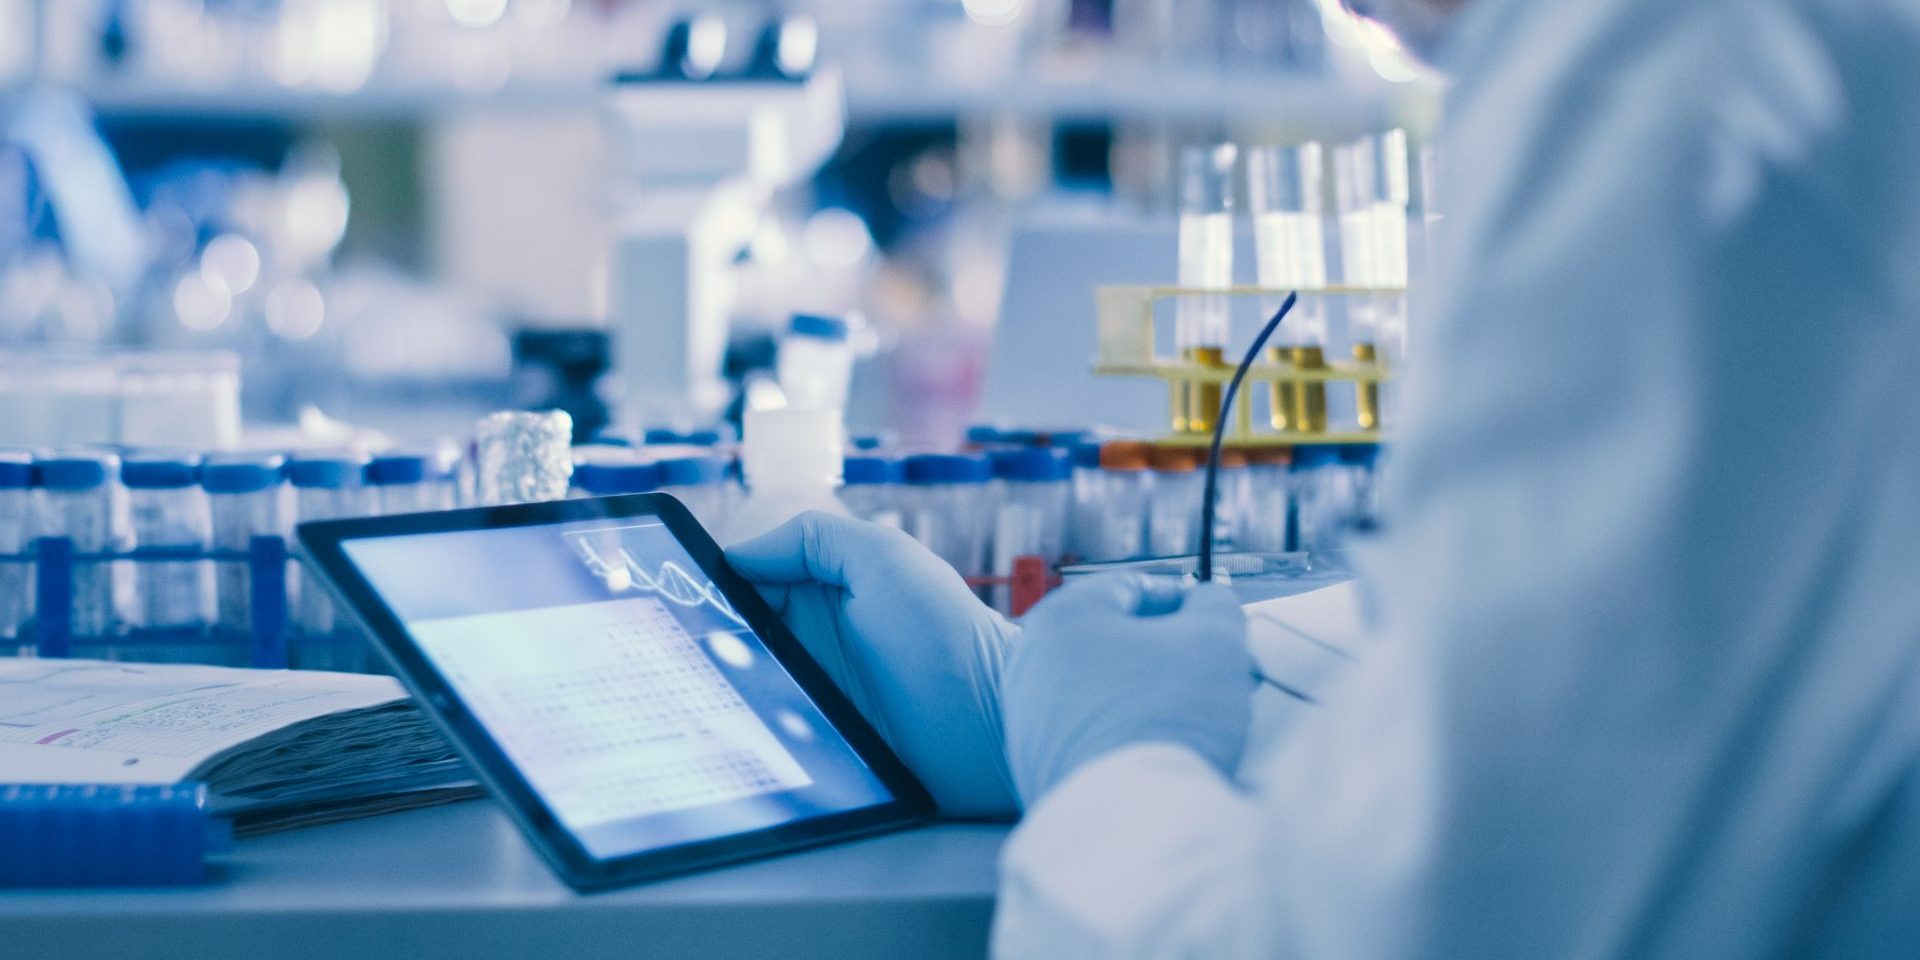 mão de cientista segura um tablet em uma mesa de laboratório, onde se encontram tubos de ensaio, microscópio e outros equipamentos laboratoriais